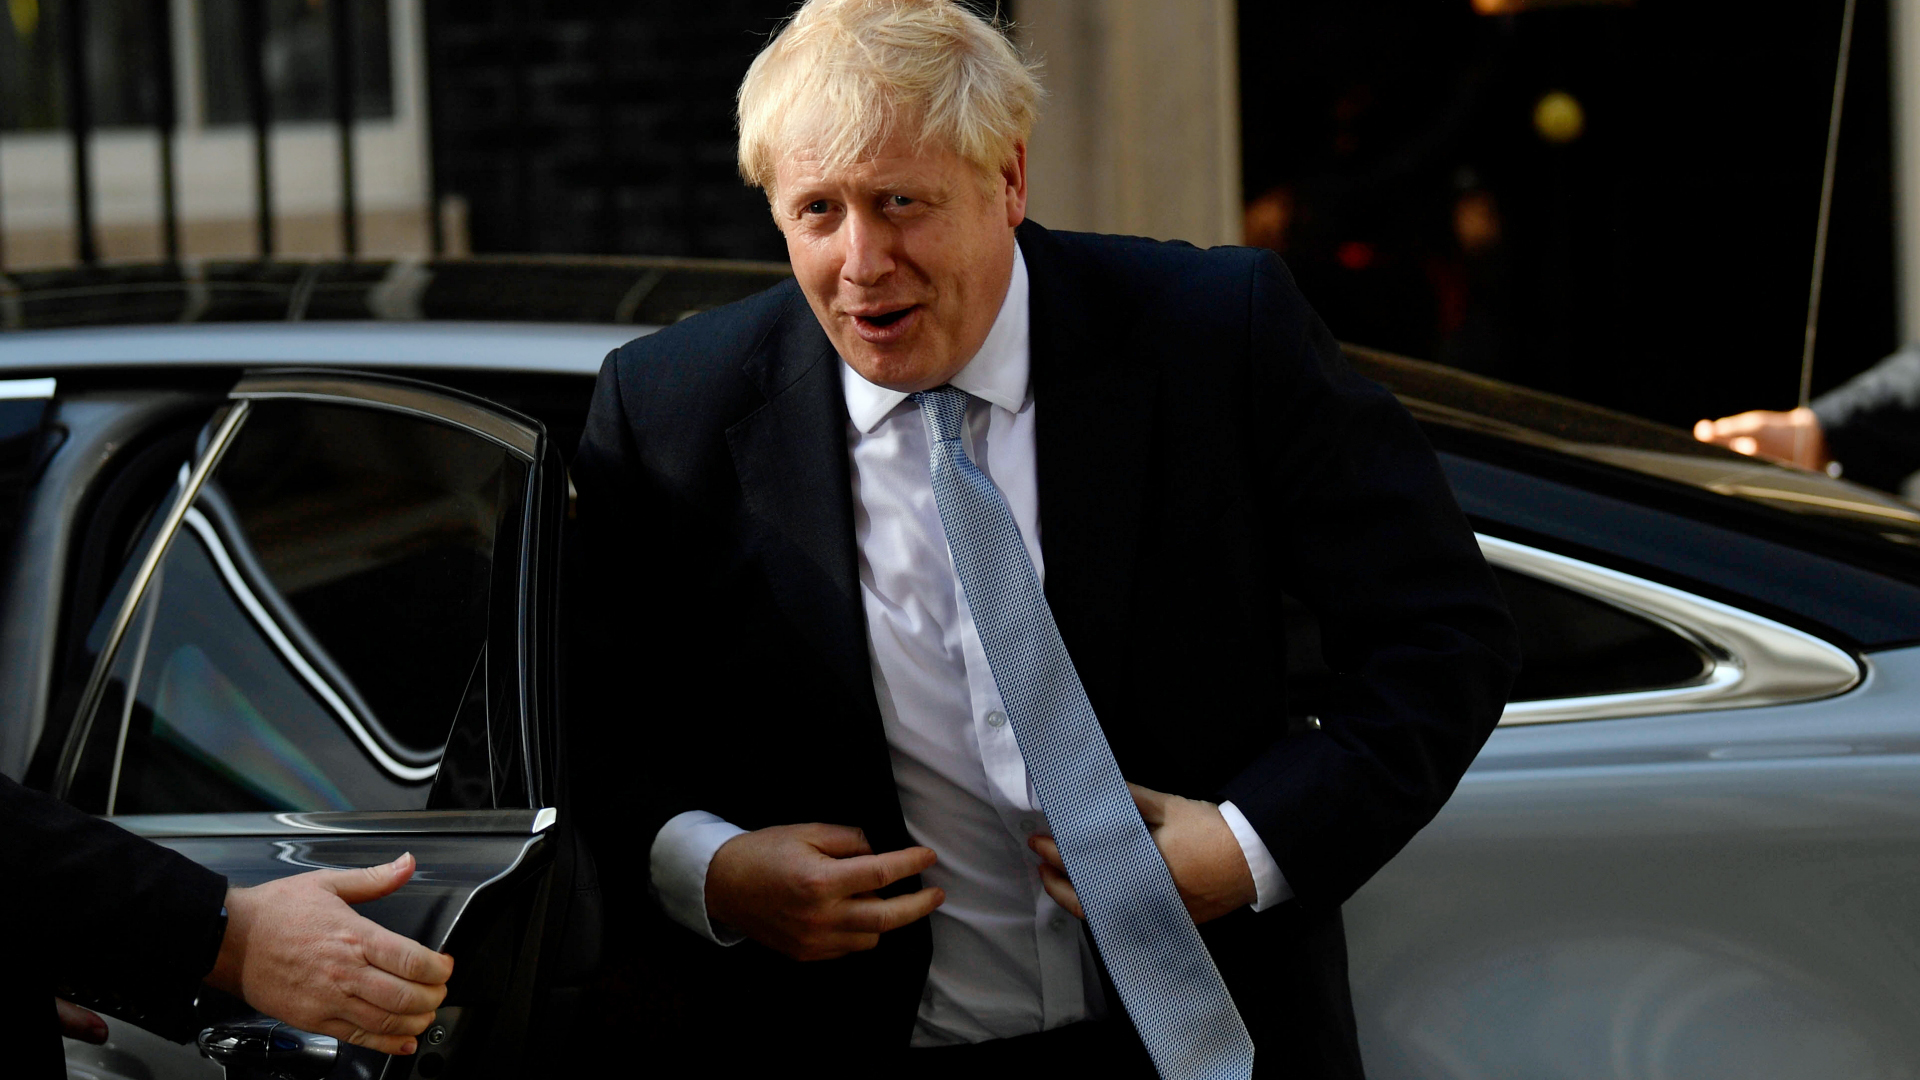 Boris Johnson steigt in der Downing Street aus einem Auto. | NEIL HALL/EPA-EFE/REX